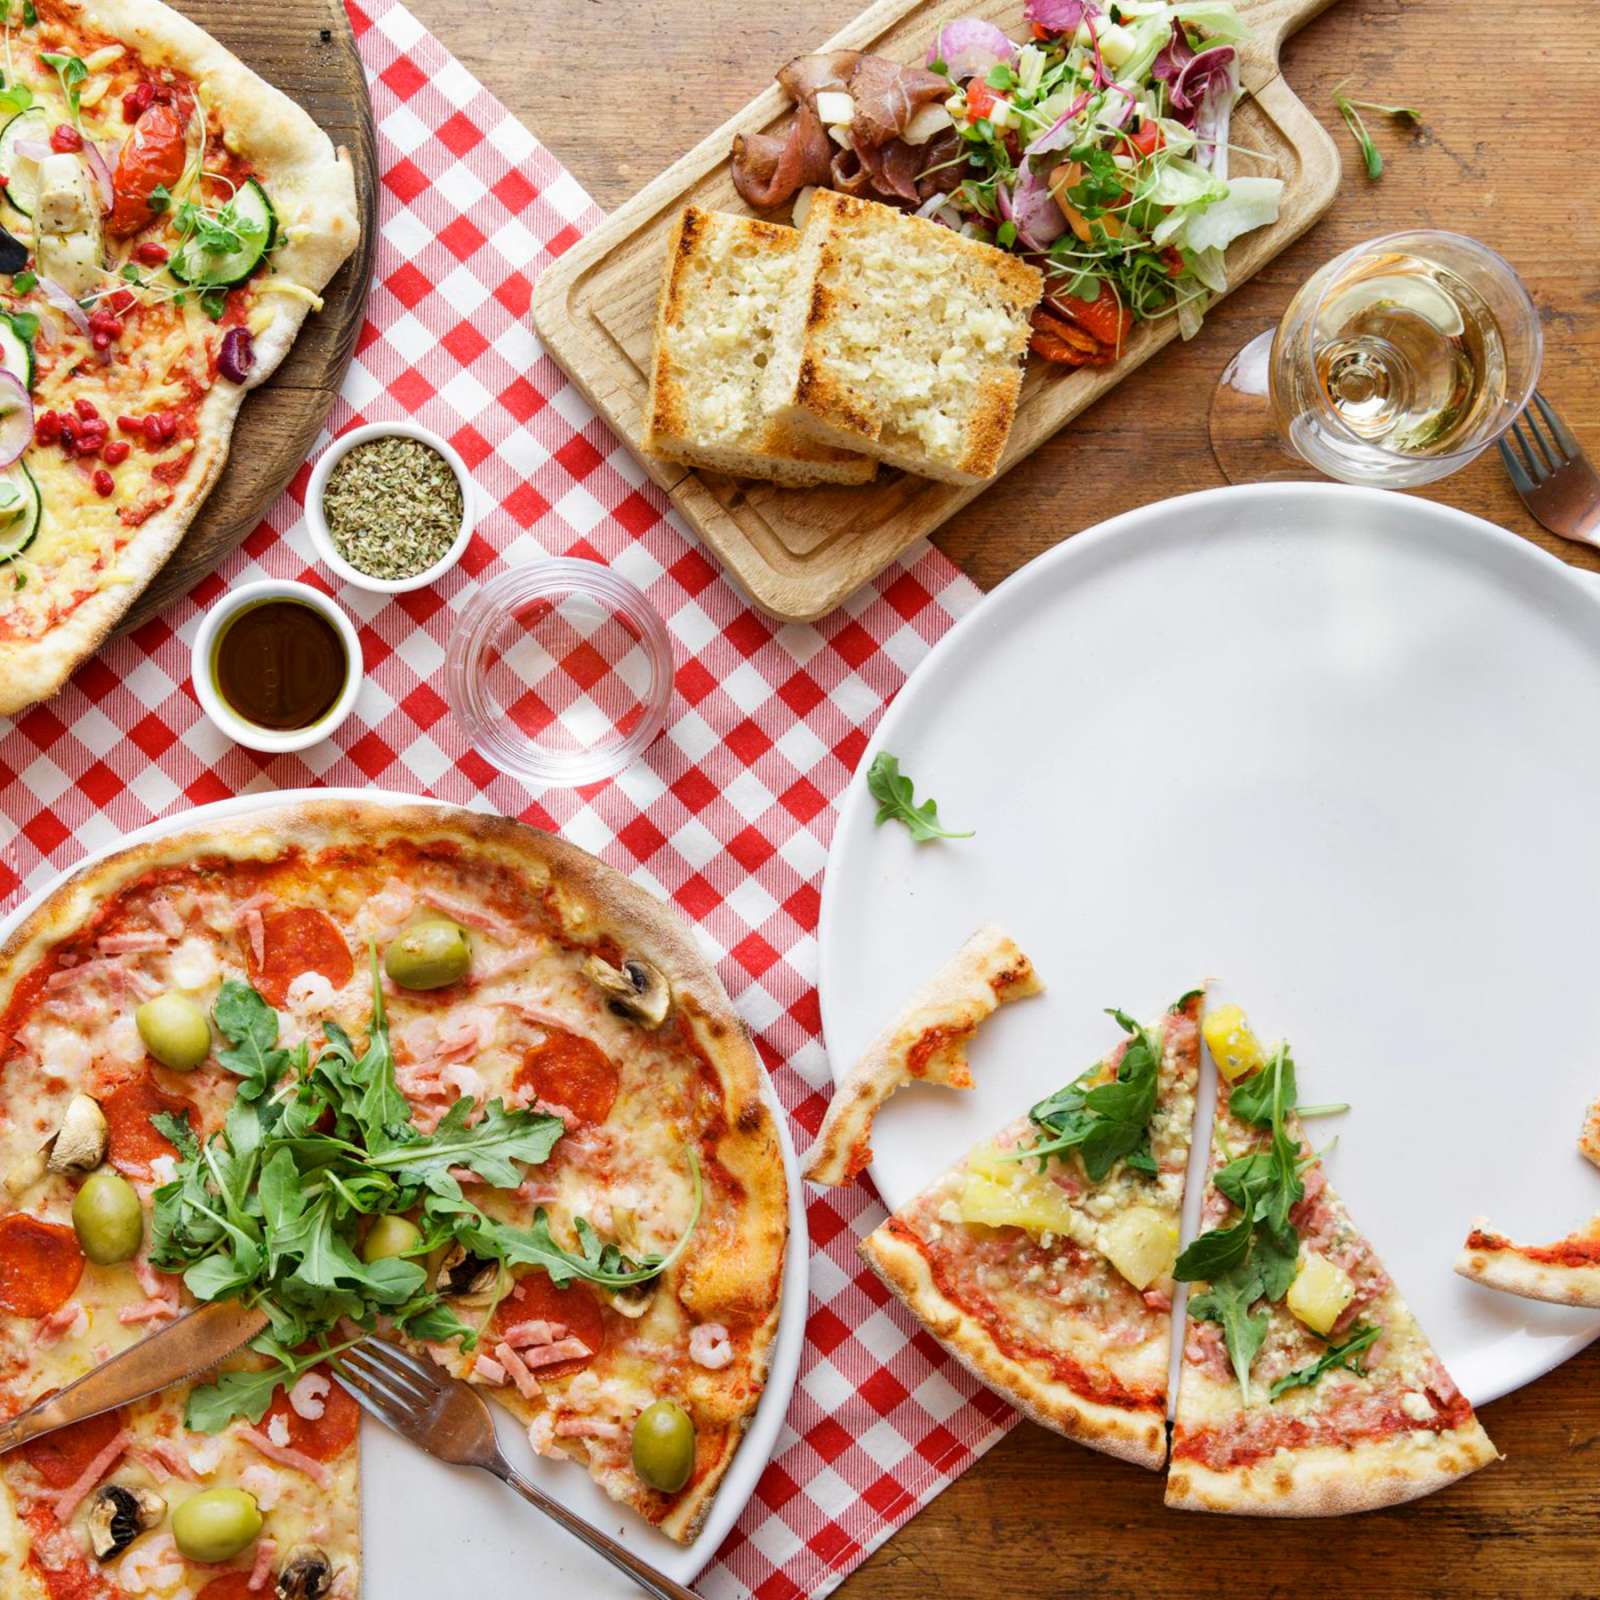 Pizzat valikoituivat Rossojen ruokalistoille, koska ne vahvistivat mielikuvaa rennosta ruokailuhetkestä.